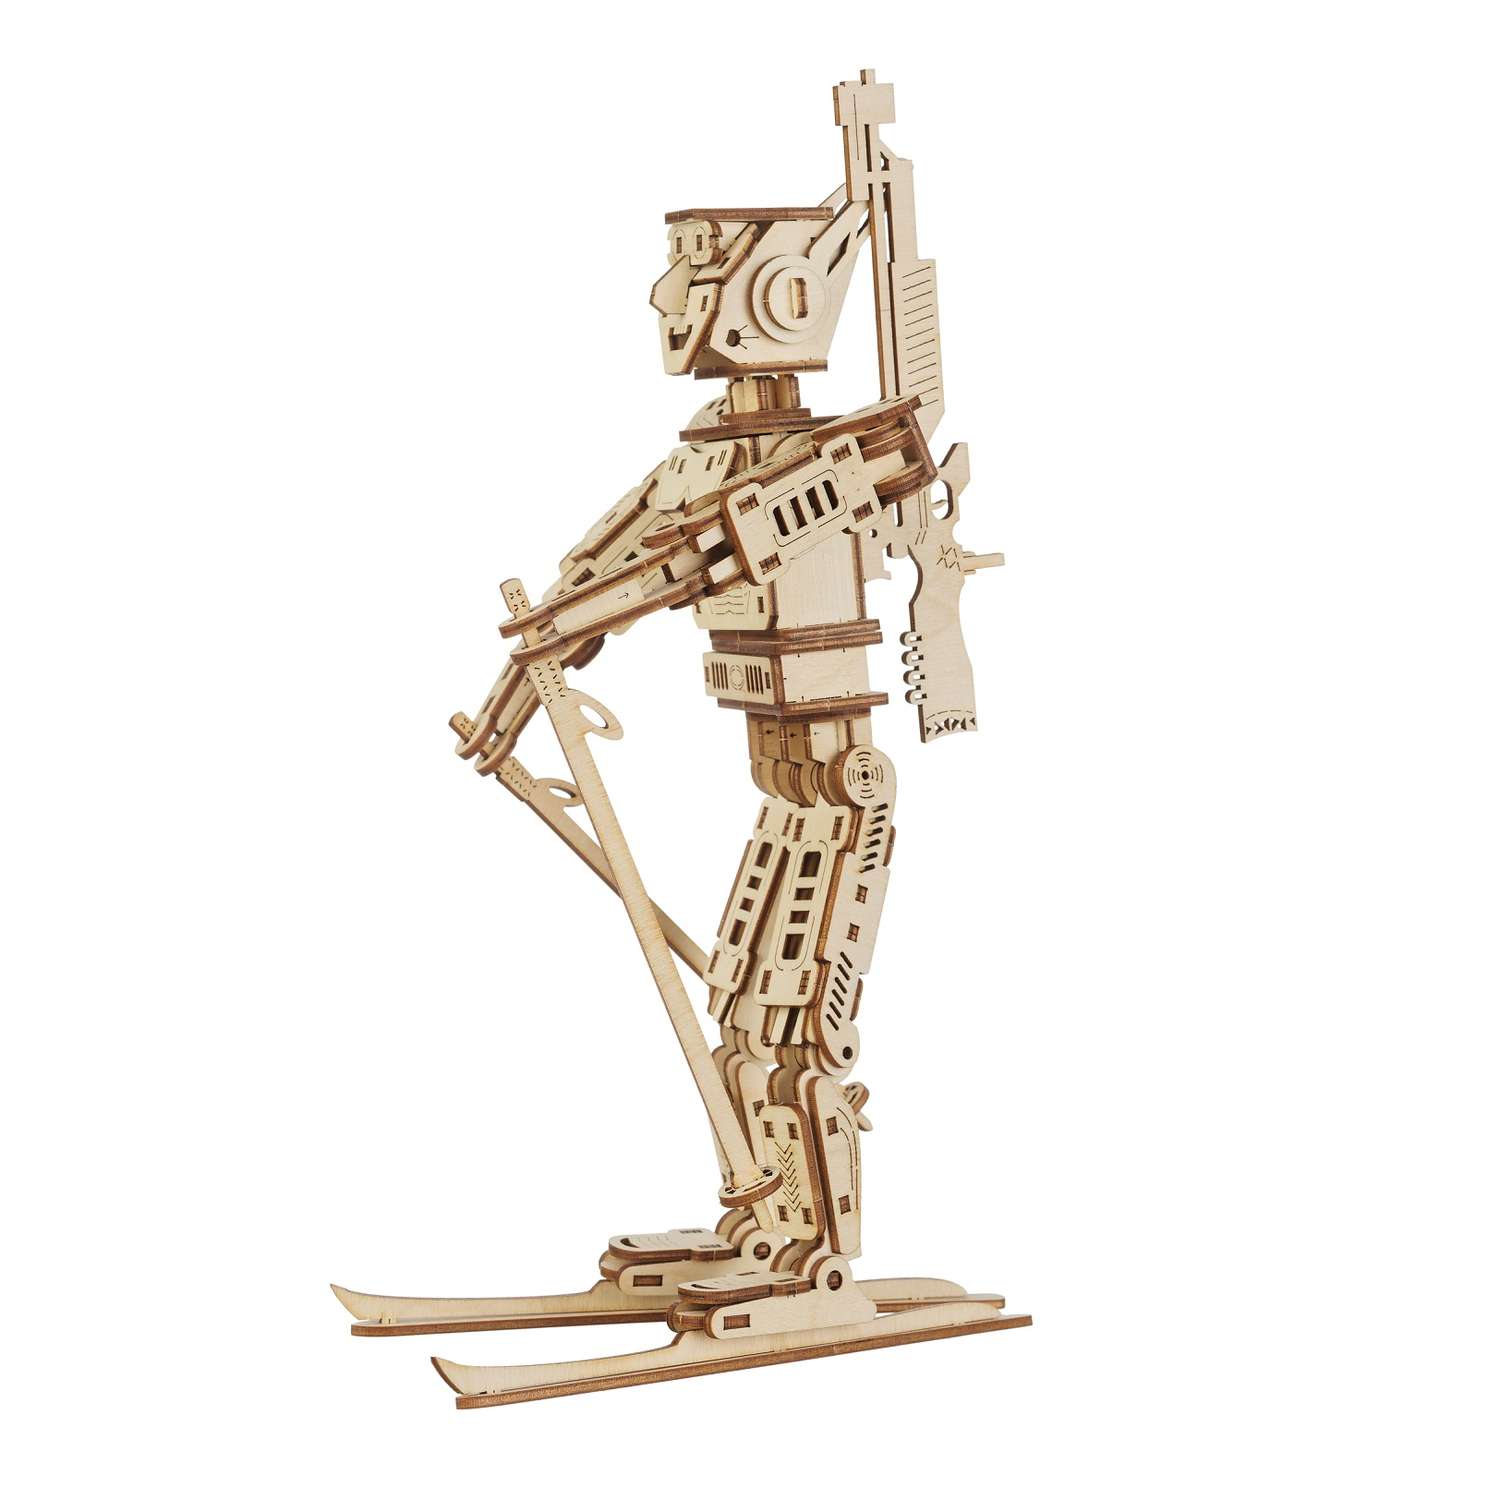 Сборная модель деревянная TADIWOOD Робот Биатлонист 29 см. 158 деталей - фото 1